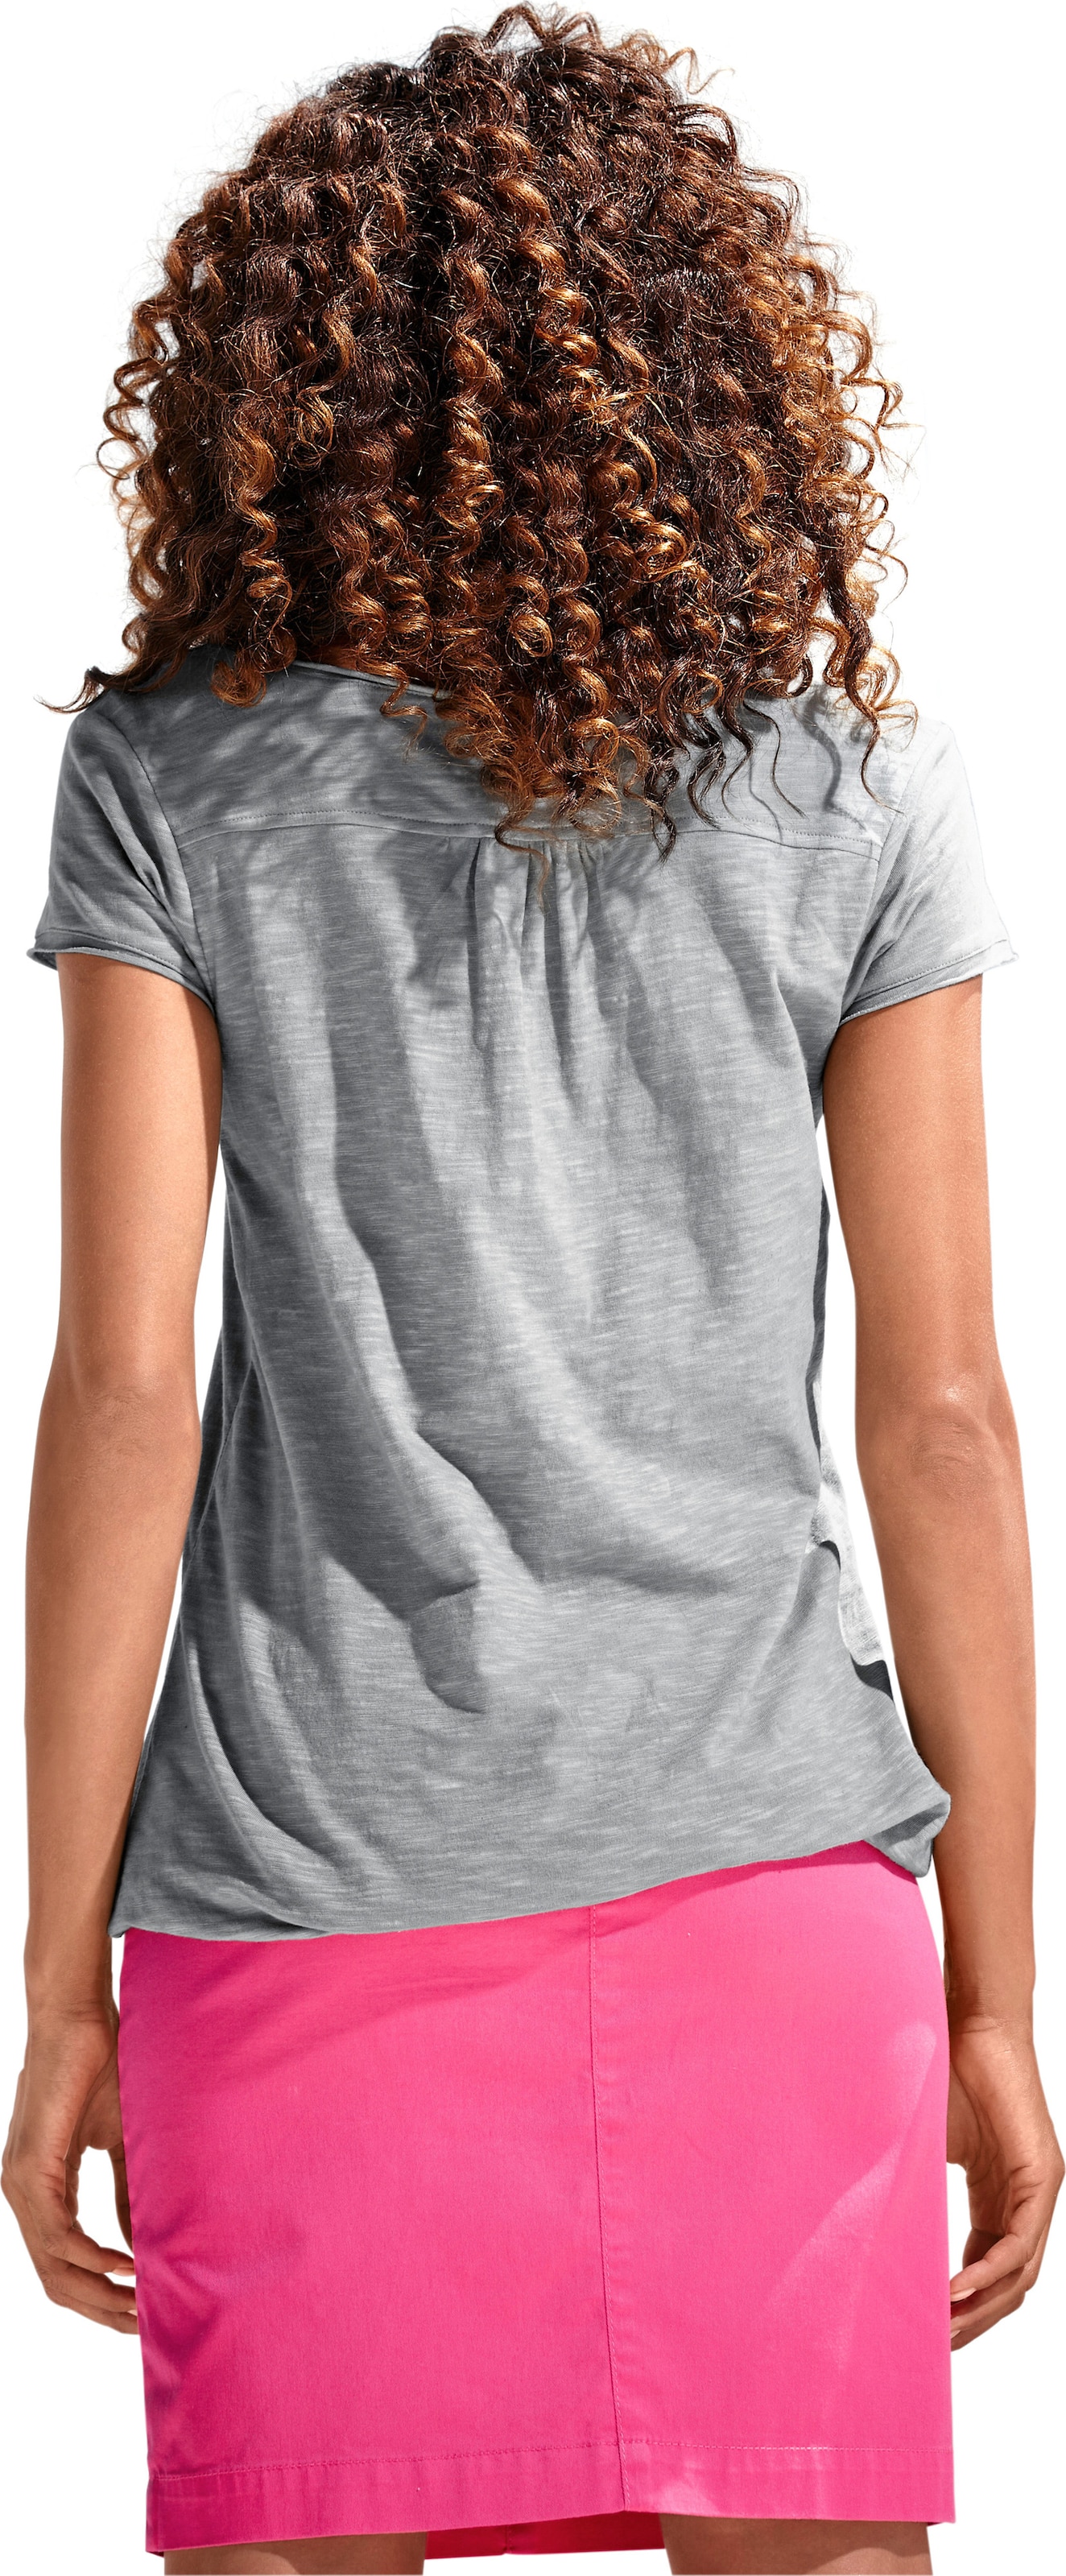 und modern günstig Kaufen-Rundhals-Shirt in grau von heine. Rundhals-Shirt in grau von heine <![CDATA[Rundhals-Shirt Moderne Form mit Gummizugbund. Mit Spitzen-Details und schimmernden Knöpfen. Leichte Shirtware mit Flammé-Effekt.]]>. 